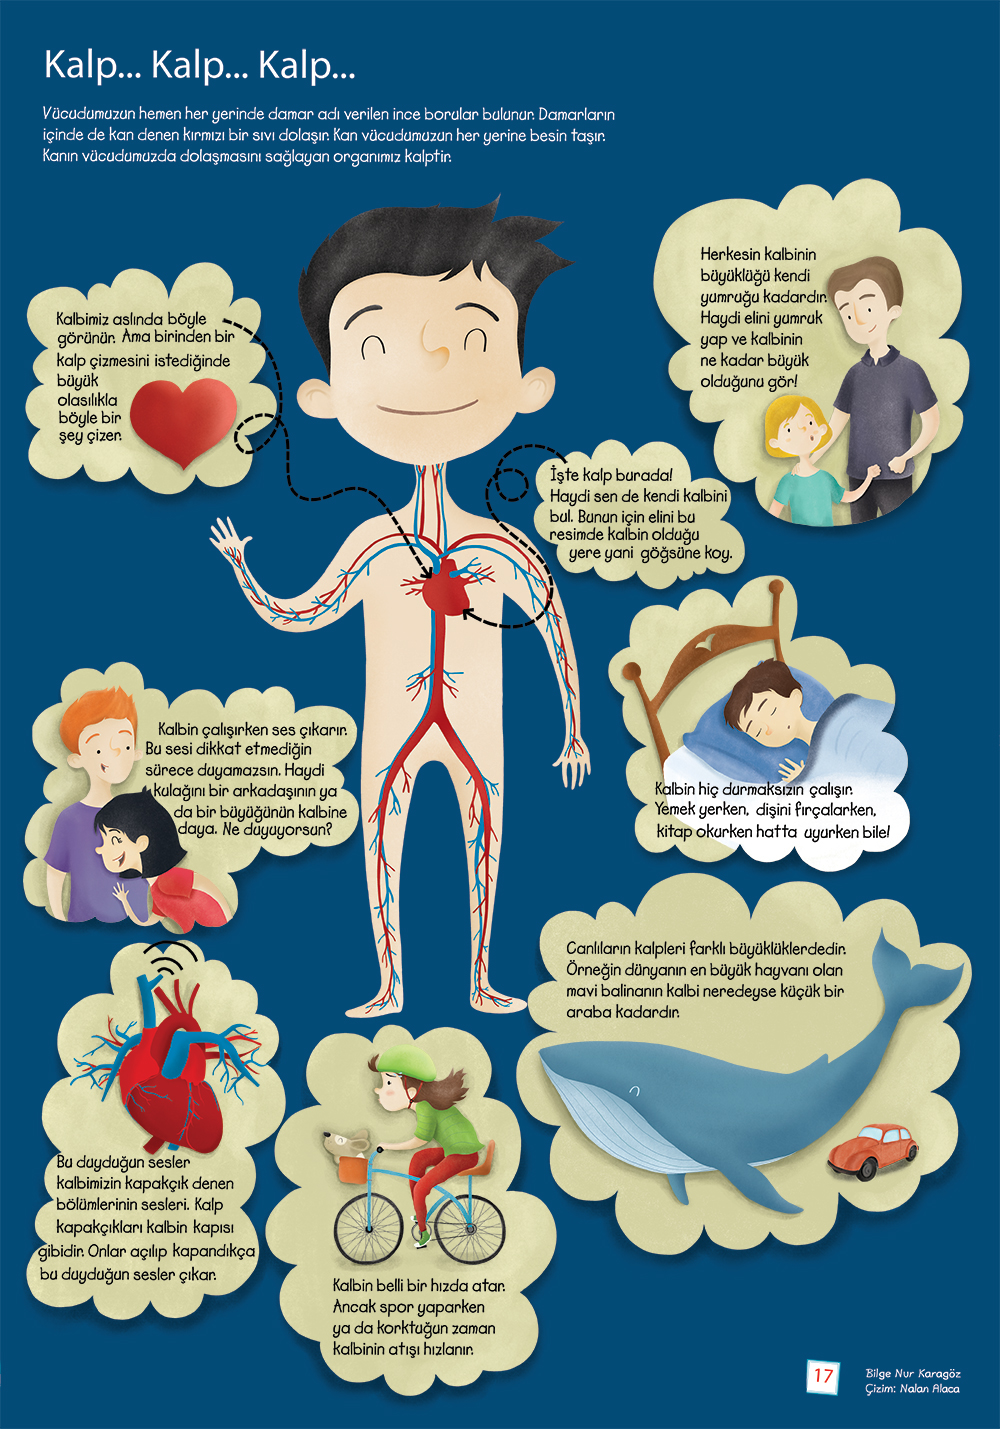 Meraklıminik tubitak heart kalp childrensmagazine çocukdergisi